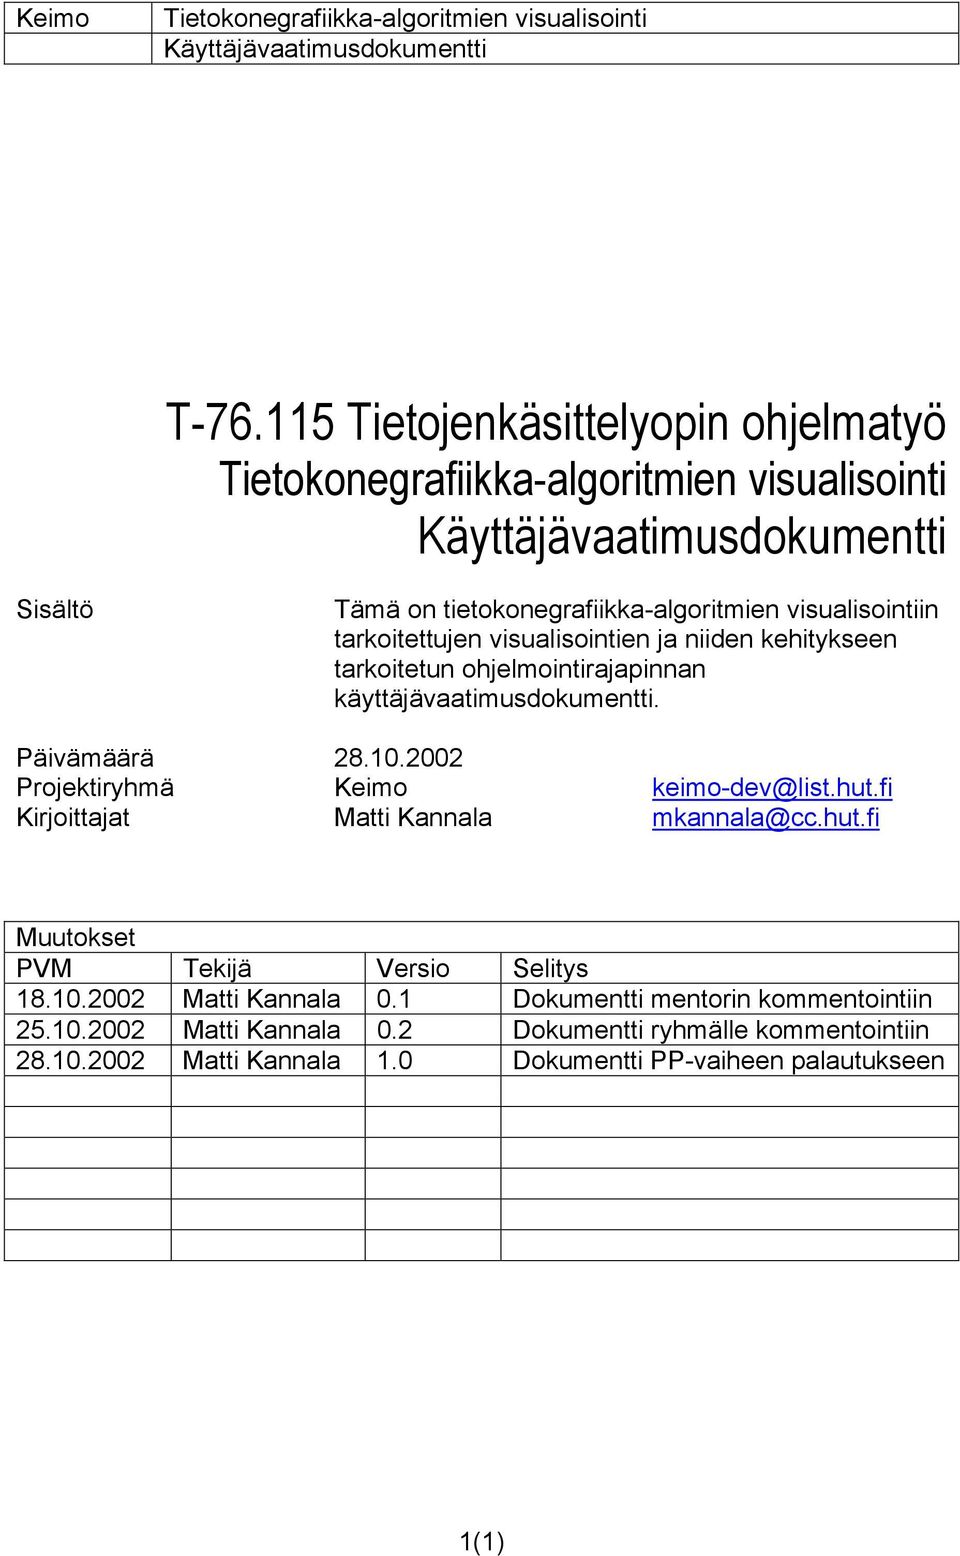 hut.fi Kirjoittajat Matti Kannala mkannala@cc.hut.fi Muutokset PVM Tekijä Versio Selitys 18.10.2002 Matti Kannala 0.